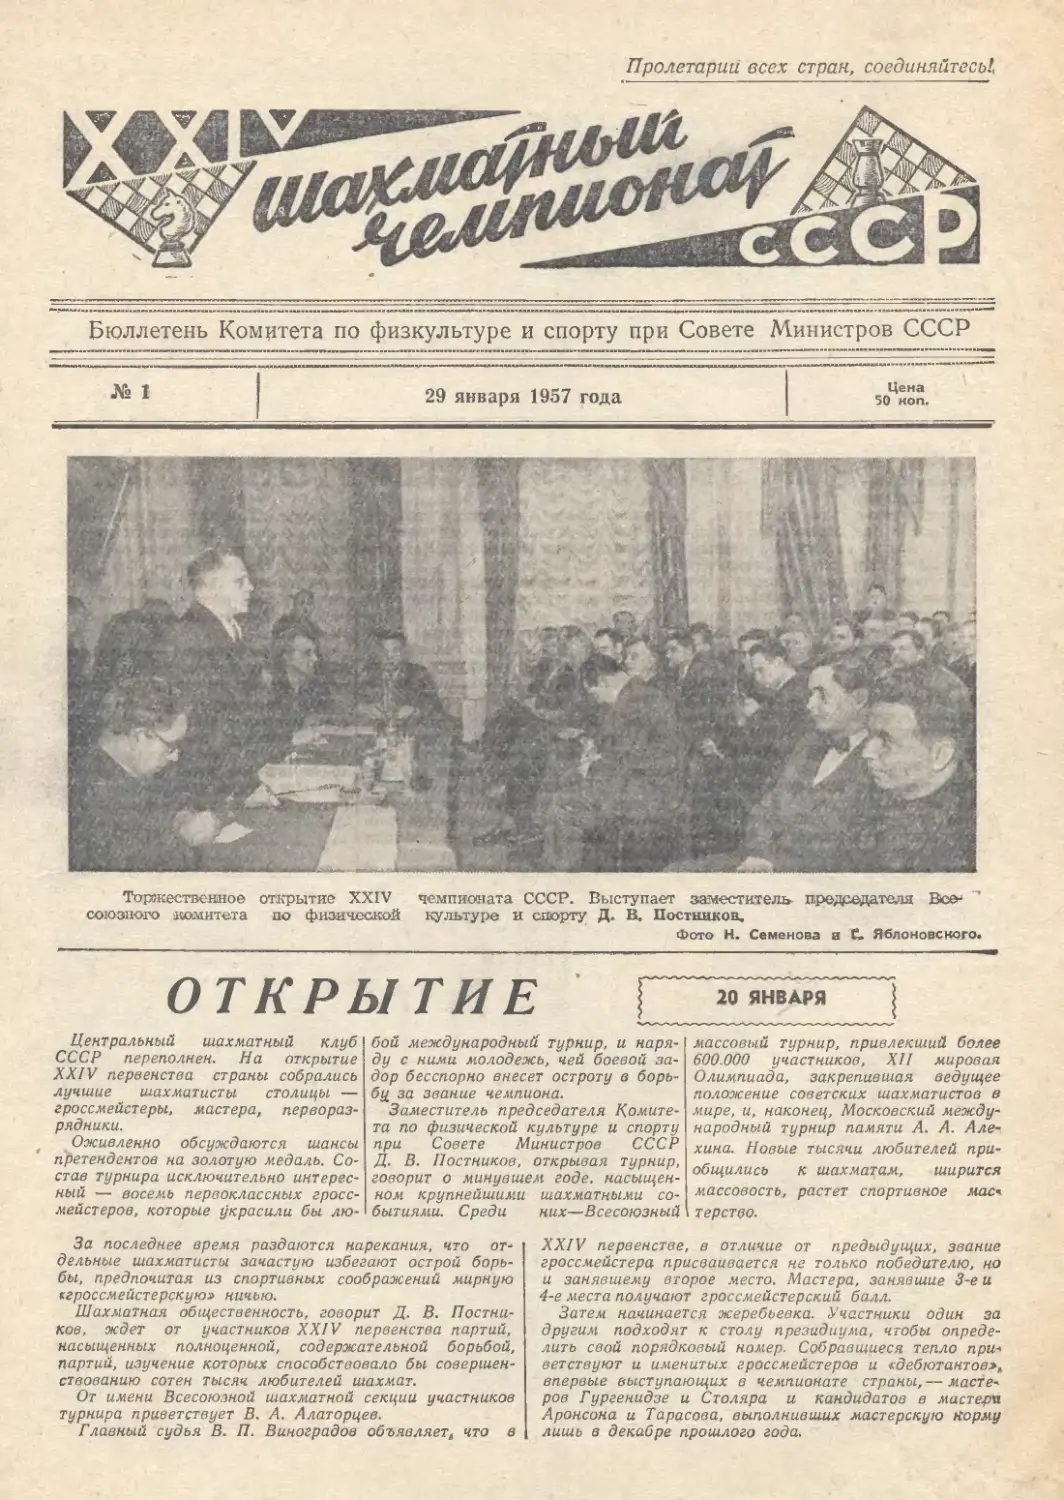 № 1 - 29 января 1957 г.
Ссылки на туры чемпионата